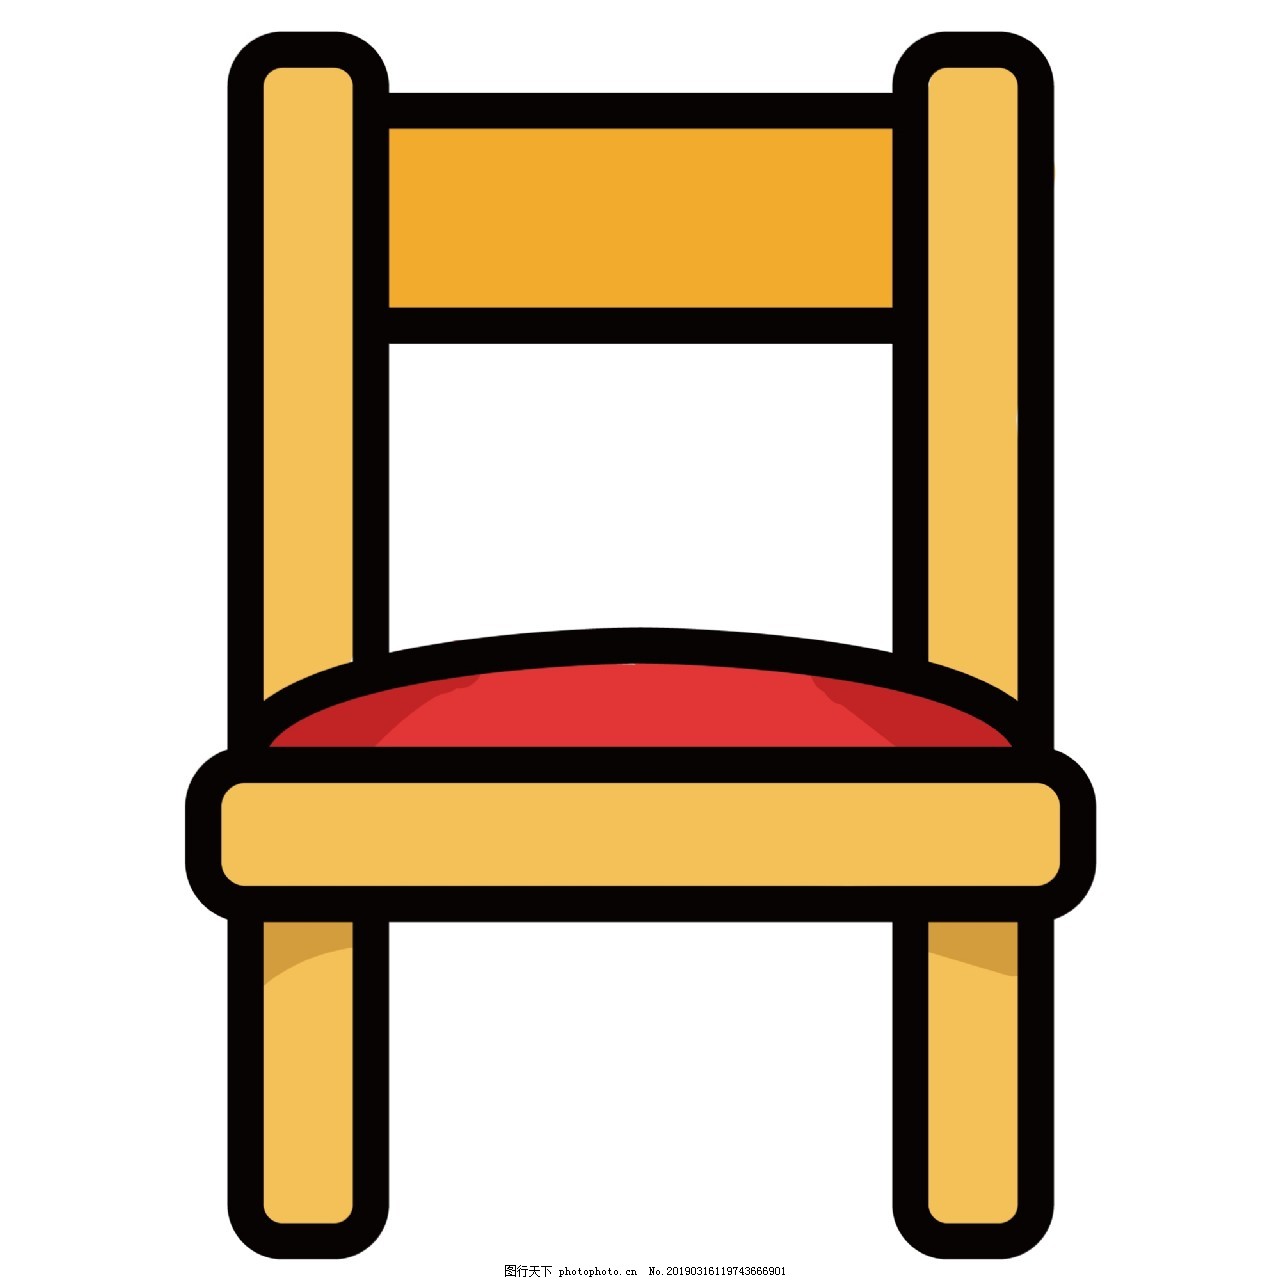 블루 의자 일러스트 만화 가구 가정 용품, 가정 도구, 자, 그림 PNG 일러스트 및 PSD 이미지 무료 다운로드 - Pngtree